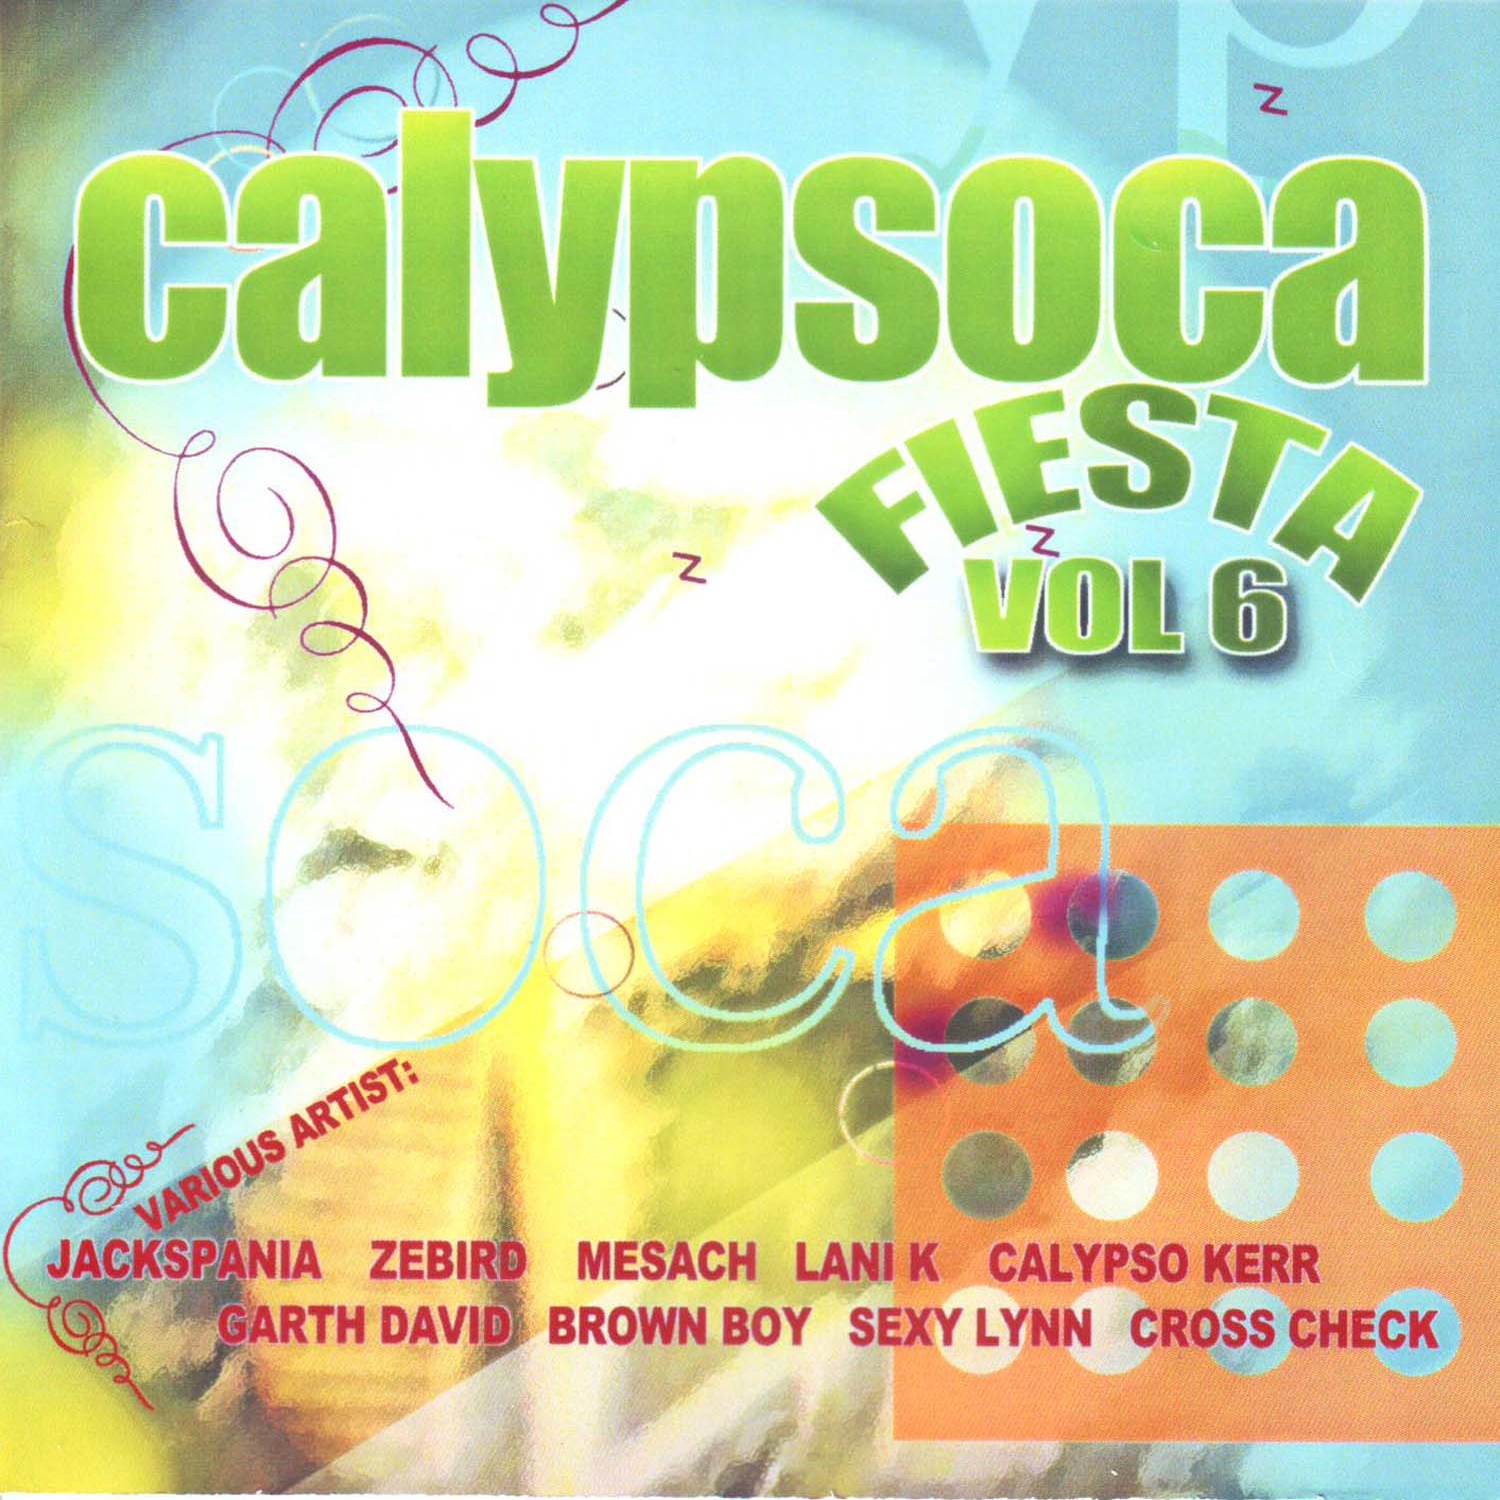 Calypsoca Fiesta Vol. 6